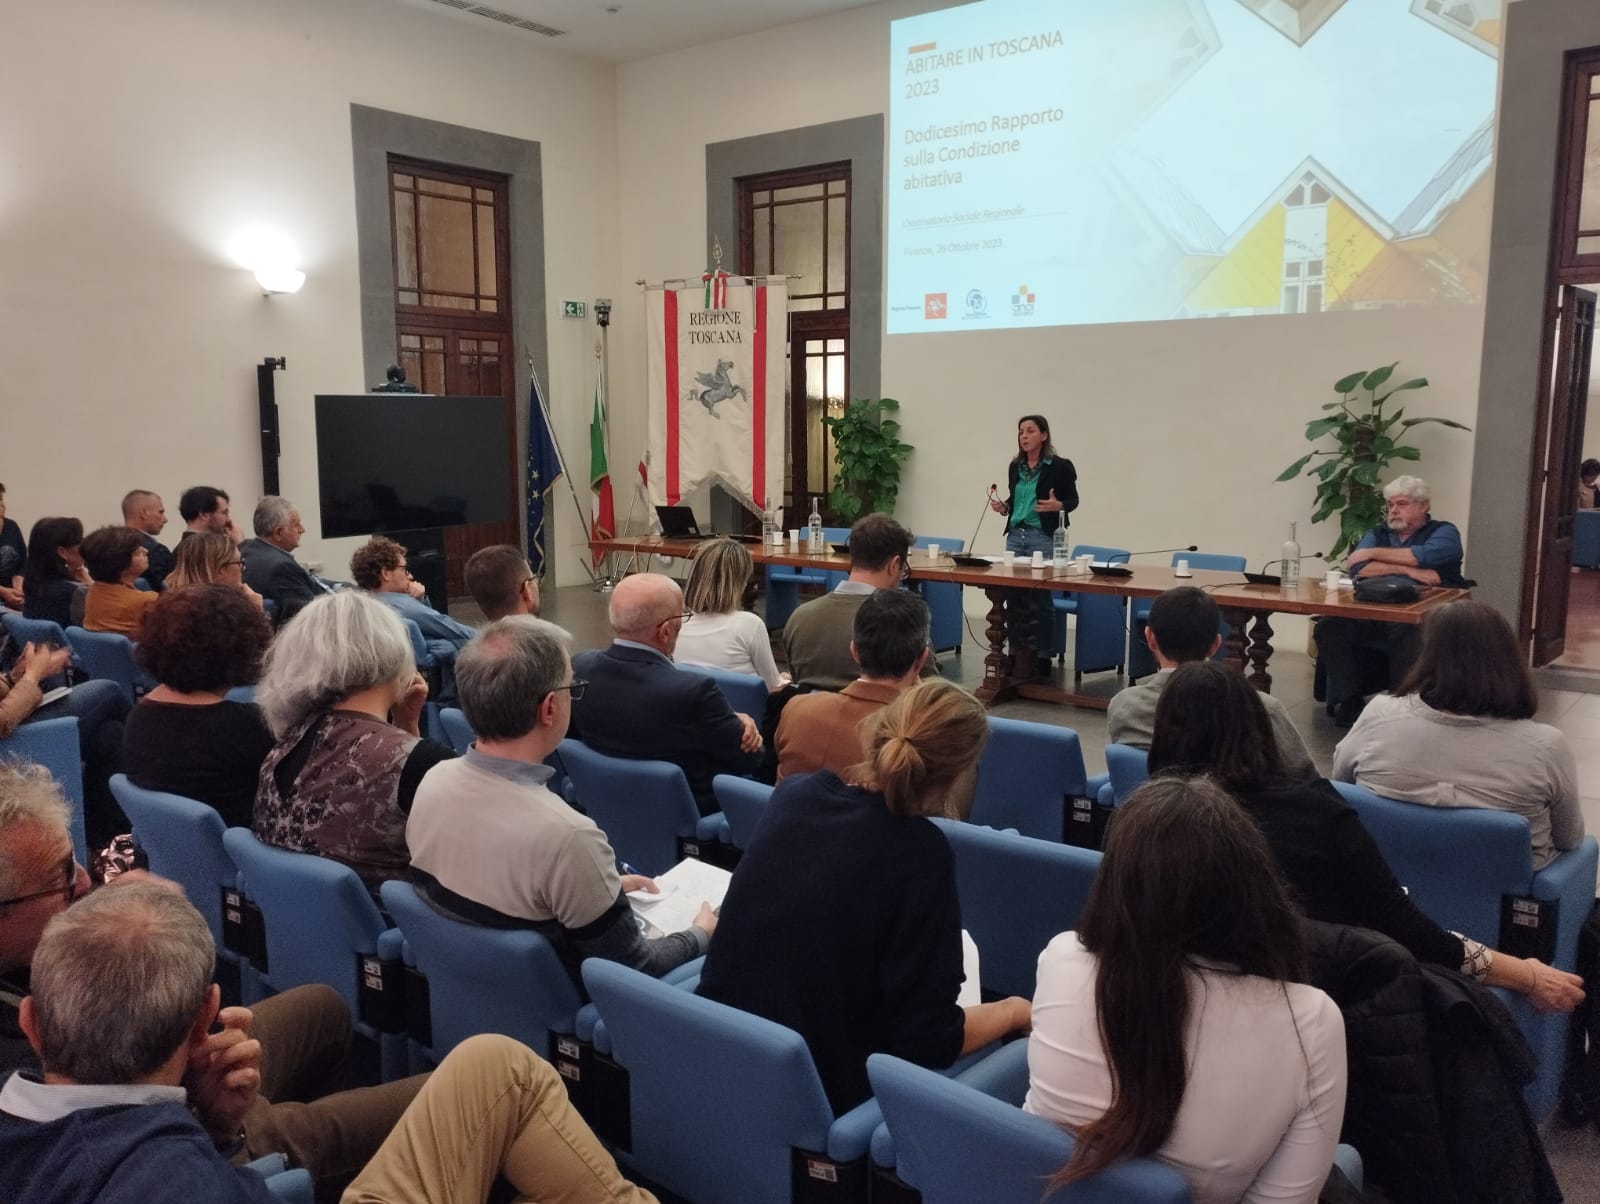 Rapporto casa in Toscana, Spinelli: “Governo agisca, occorre piano nazionale”